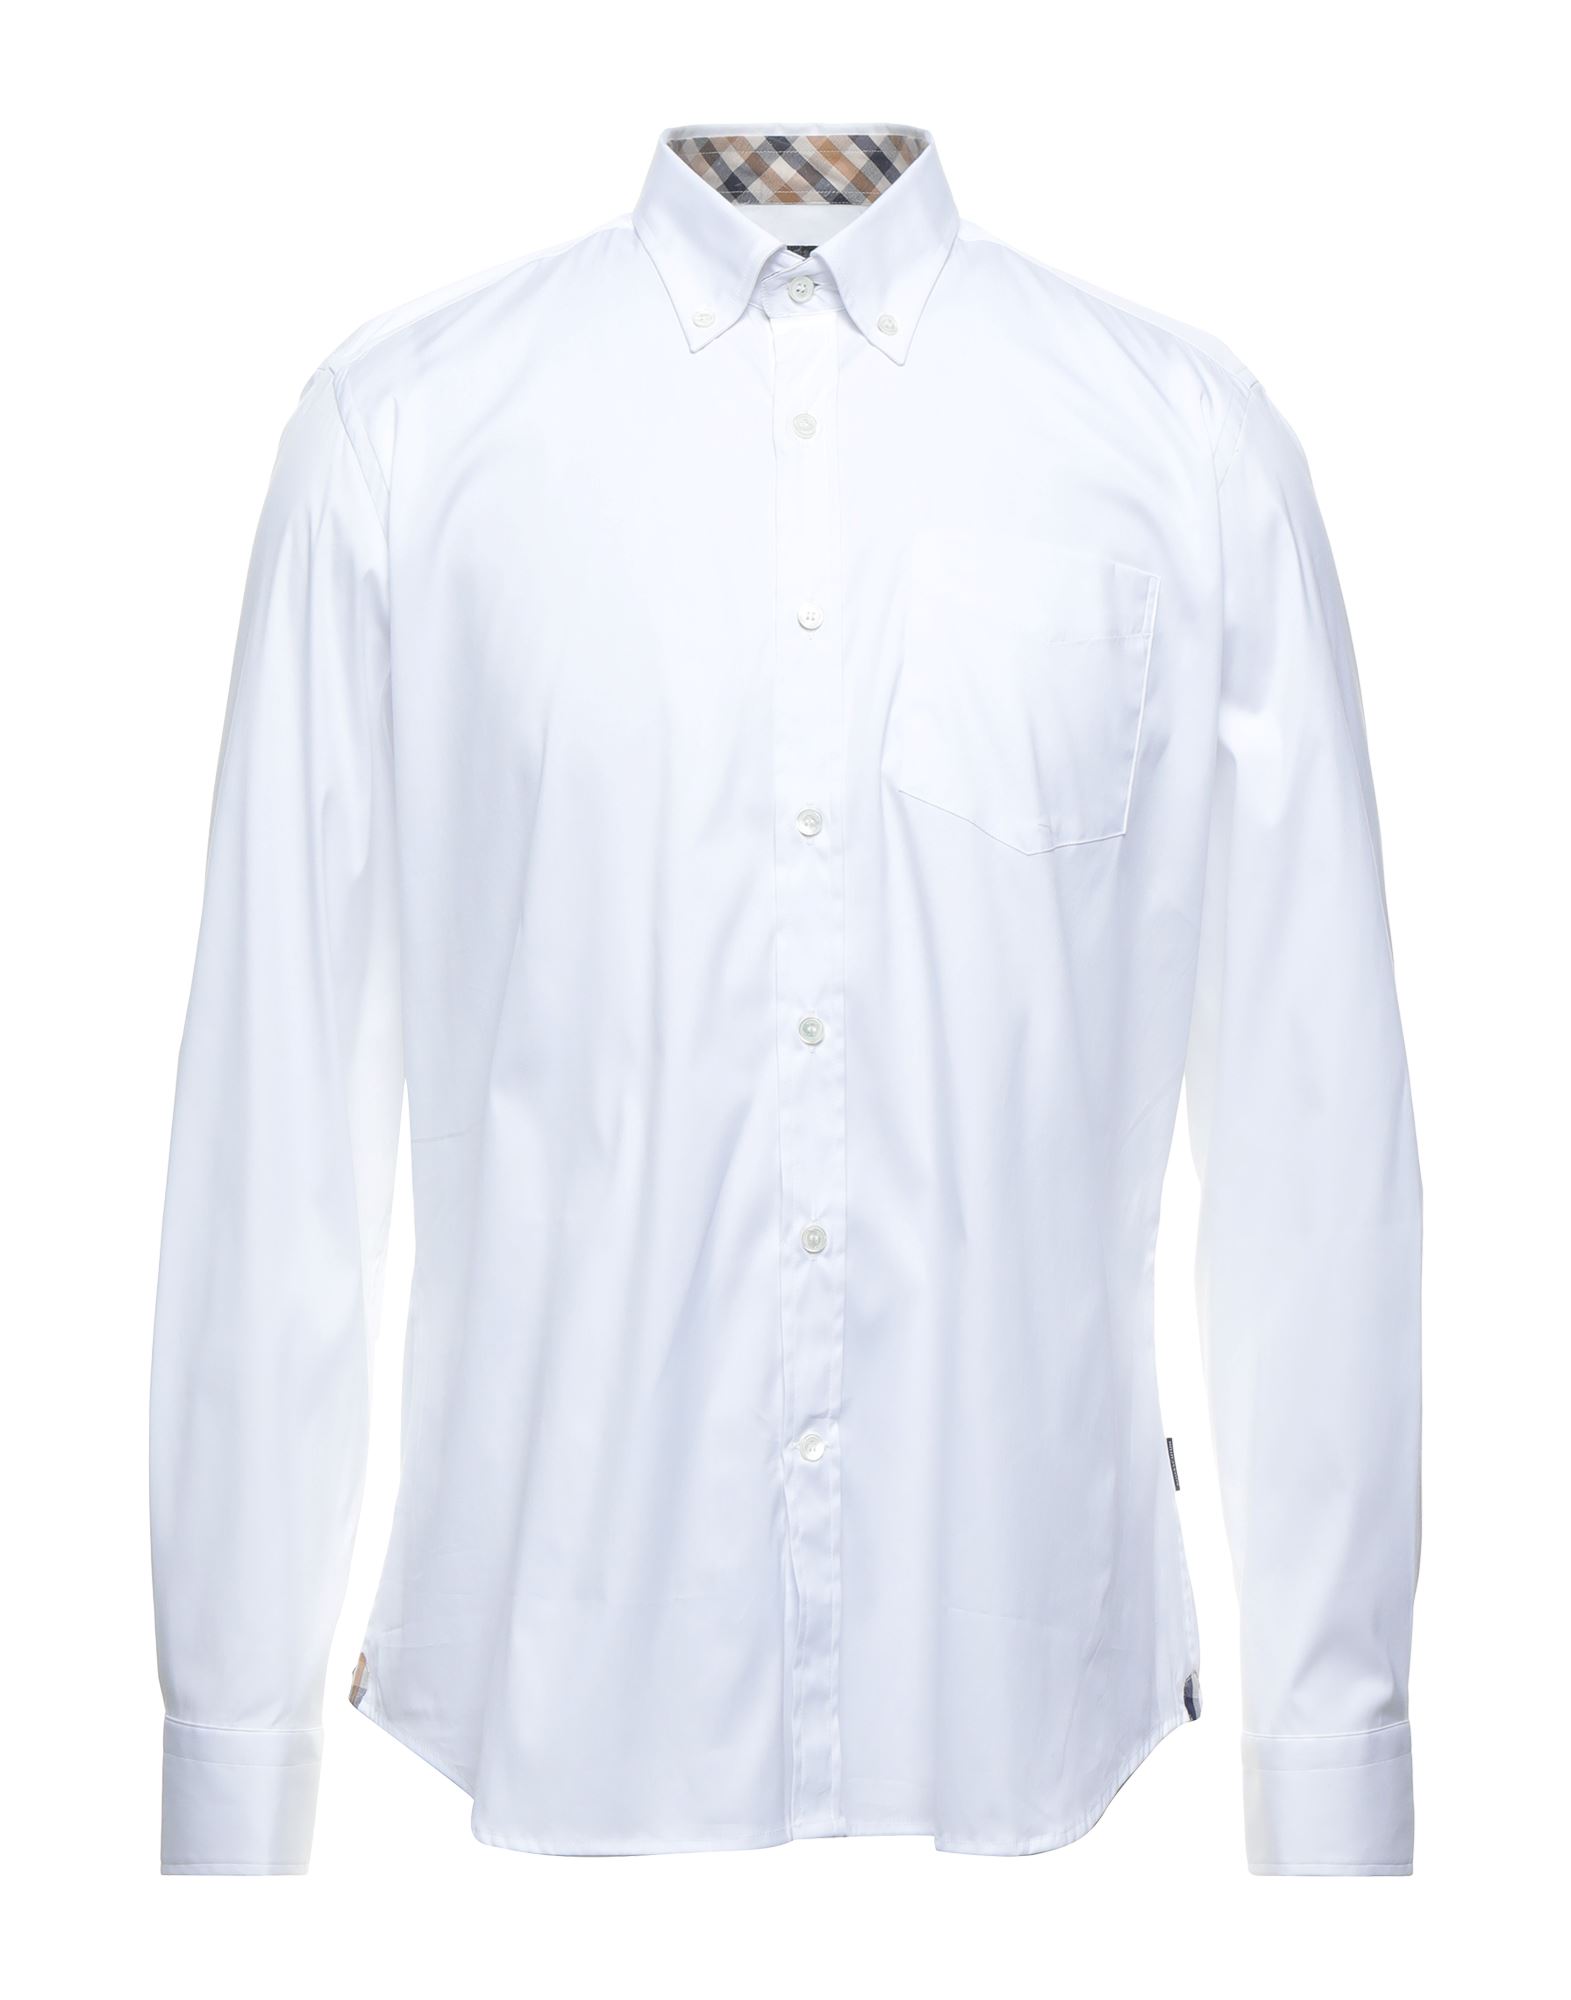 アクアスキュータム(Aquascutum) メンズシャツ・ワイシャツ | 通販・人気ランキング - 価格.com